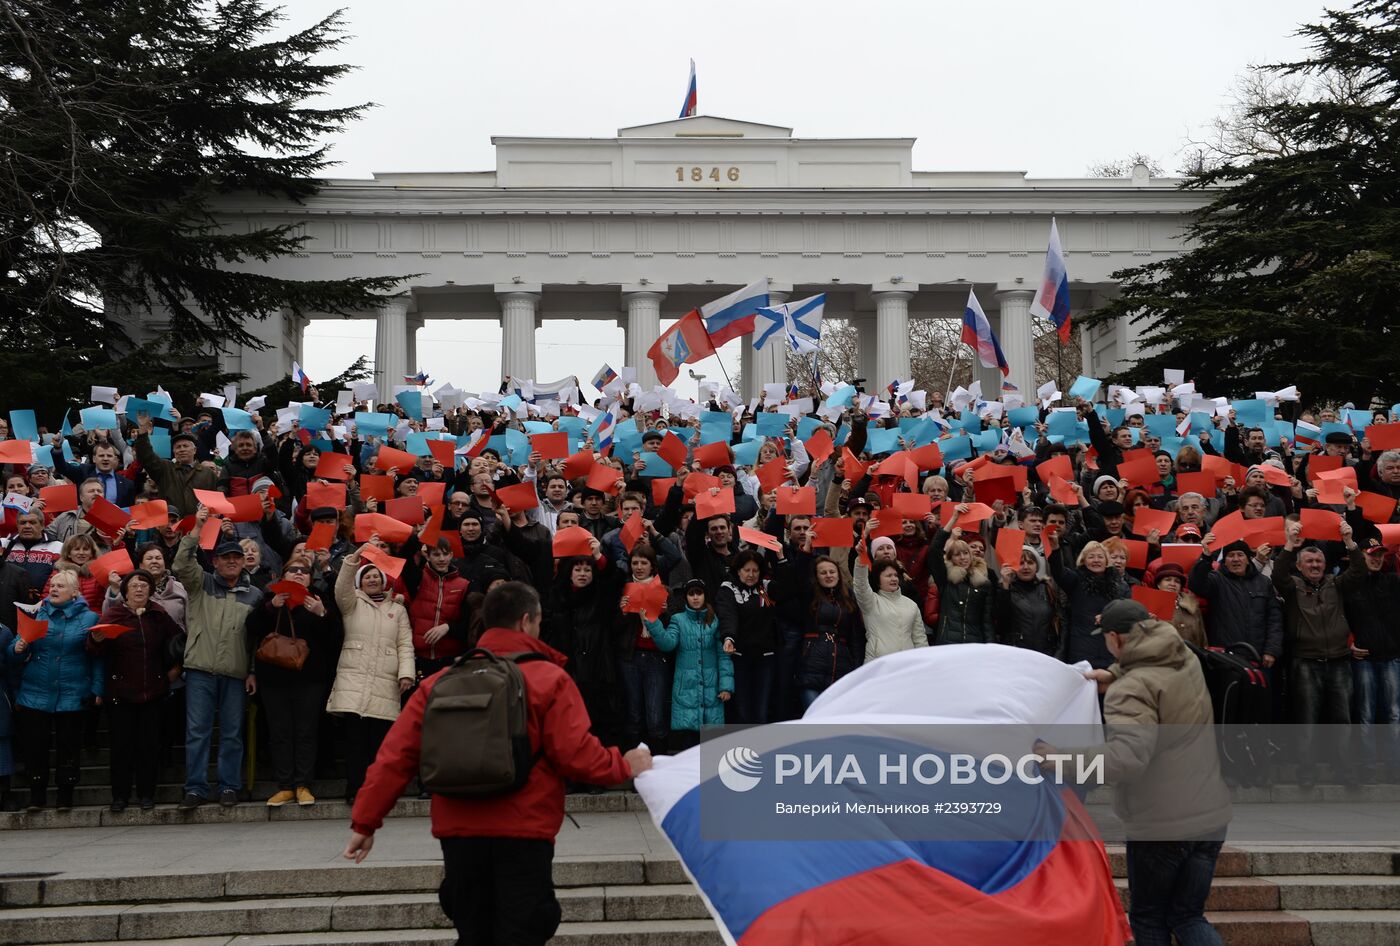 Митинг в поддержку референдума о статусе Крыма в Севастополе